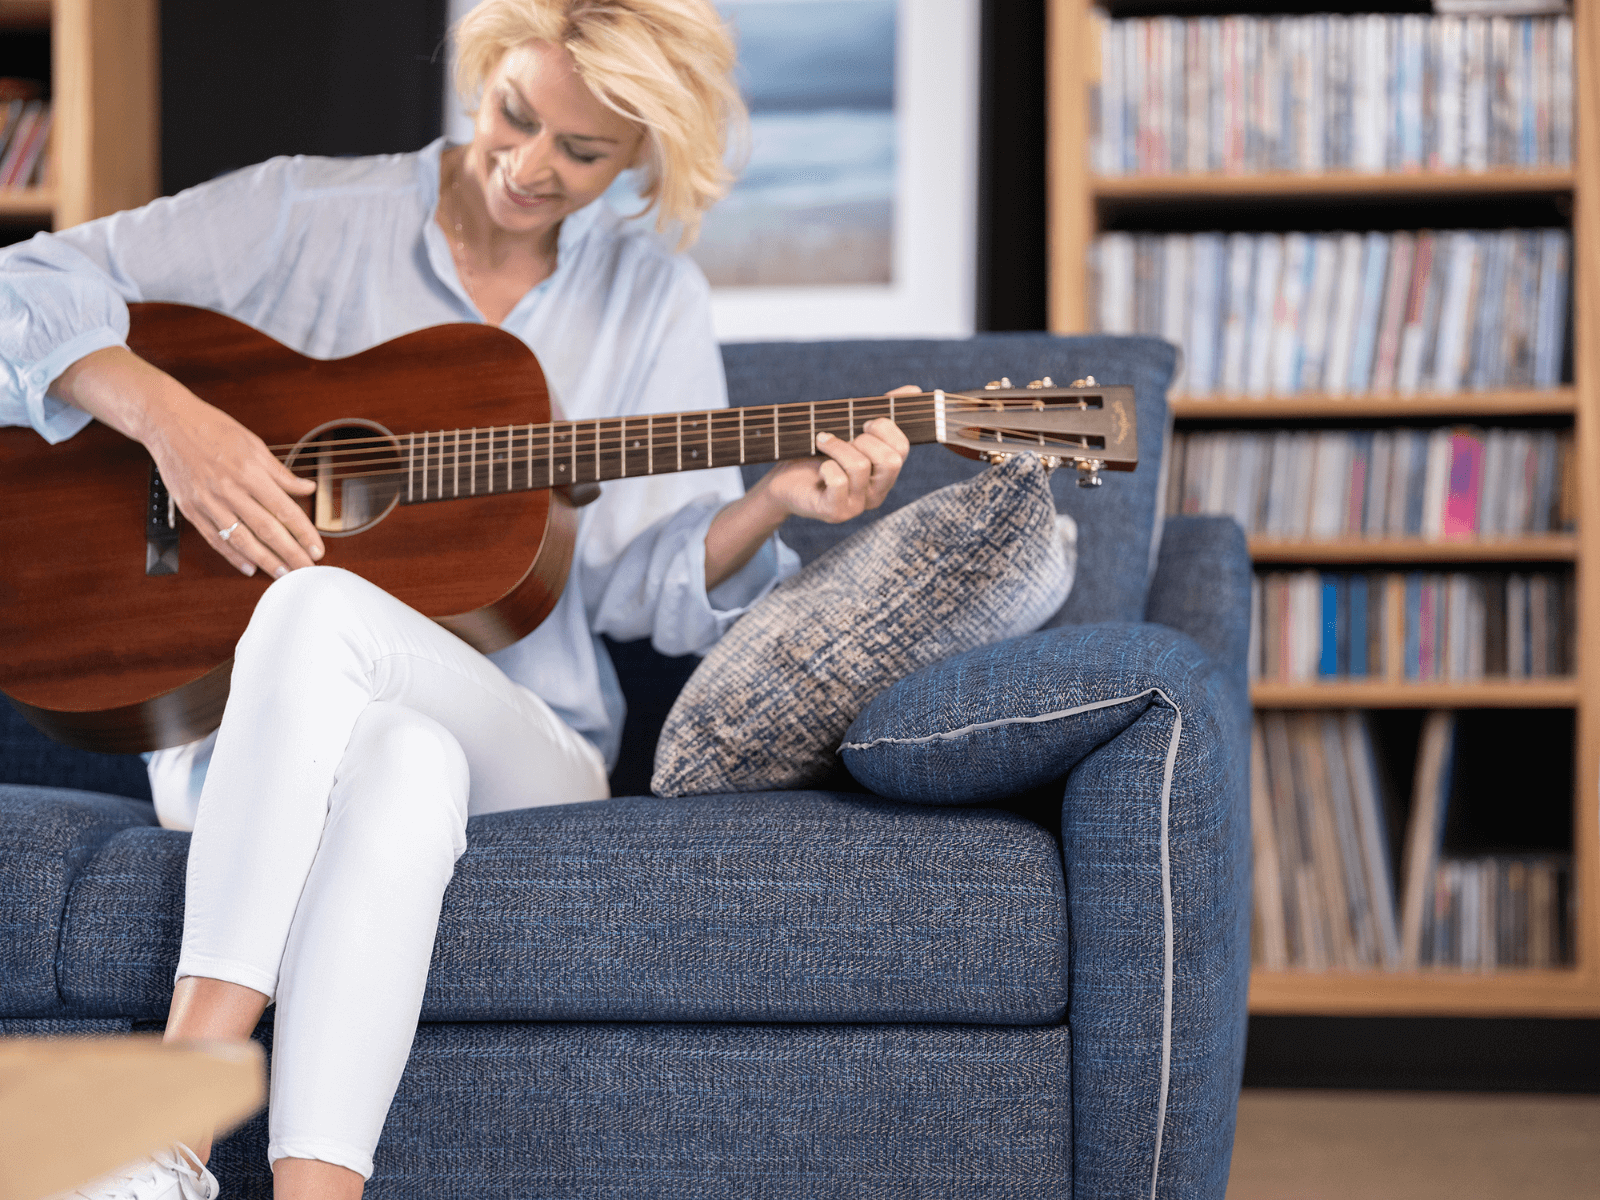 Gitarre spielende Frau auf einem blauen Schlafsofa